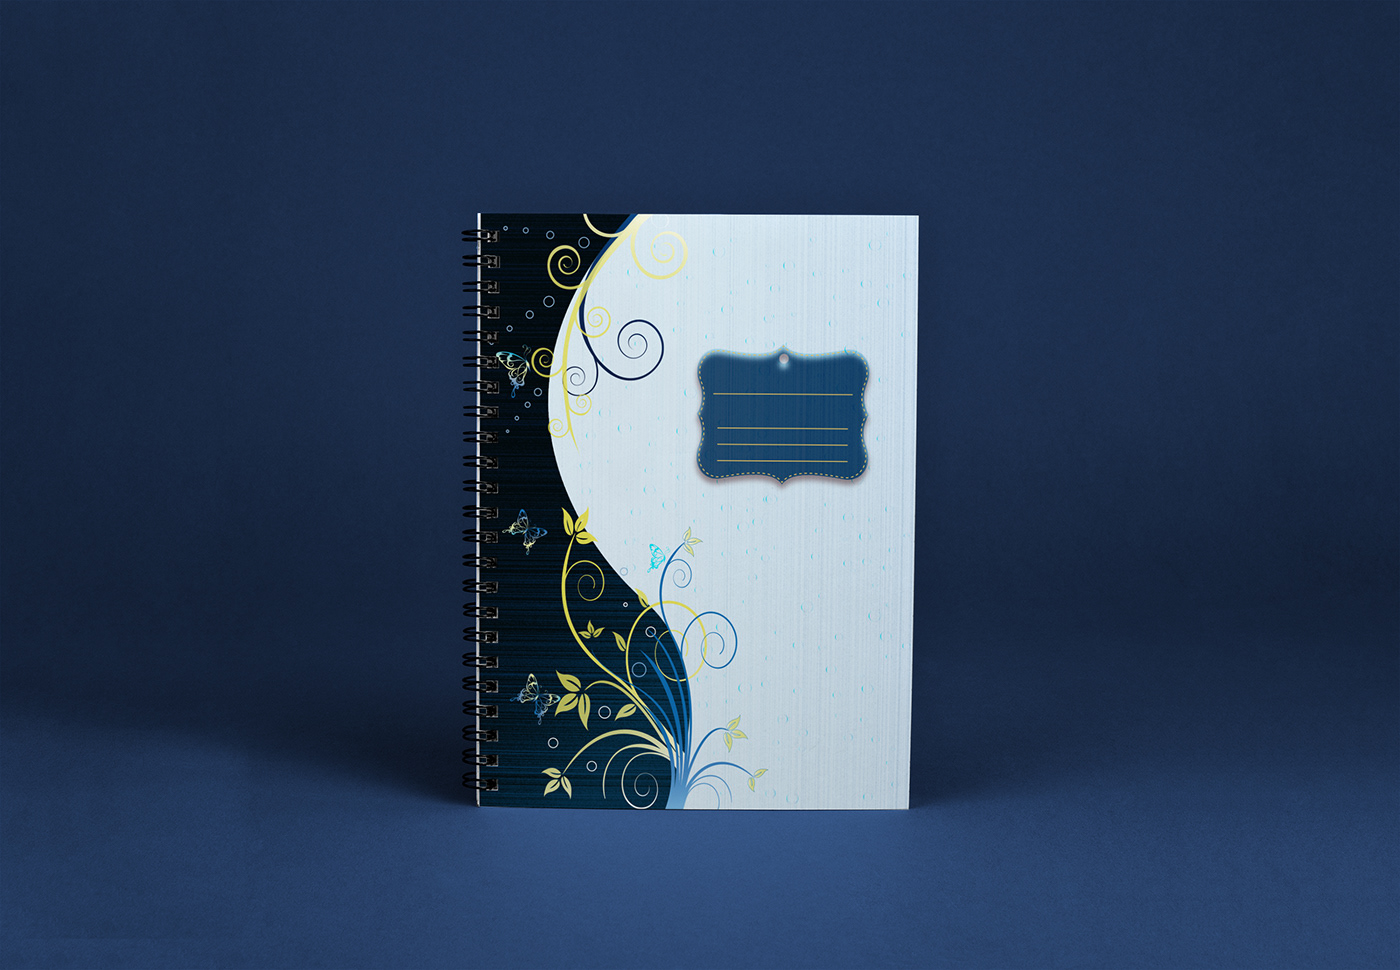 cuadernos ilustrados girls caratulas Anillados diseño gráfico desing book